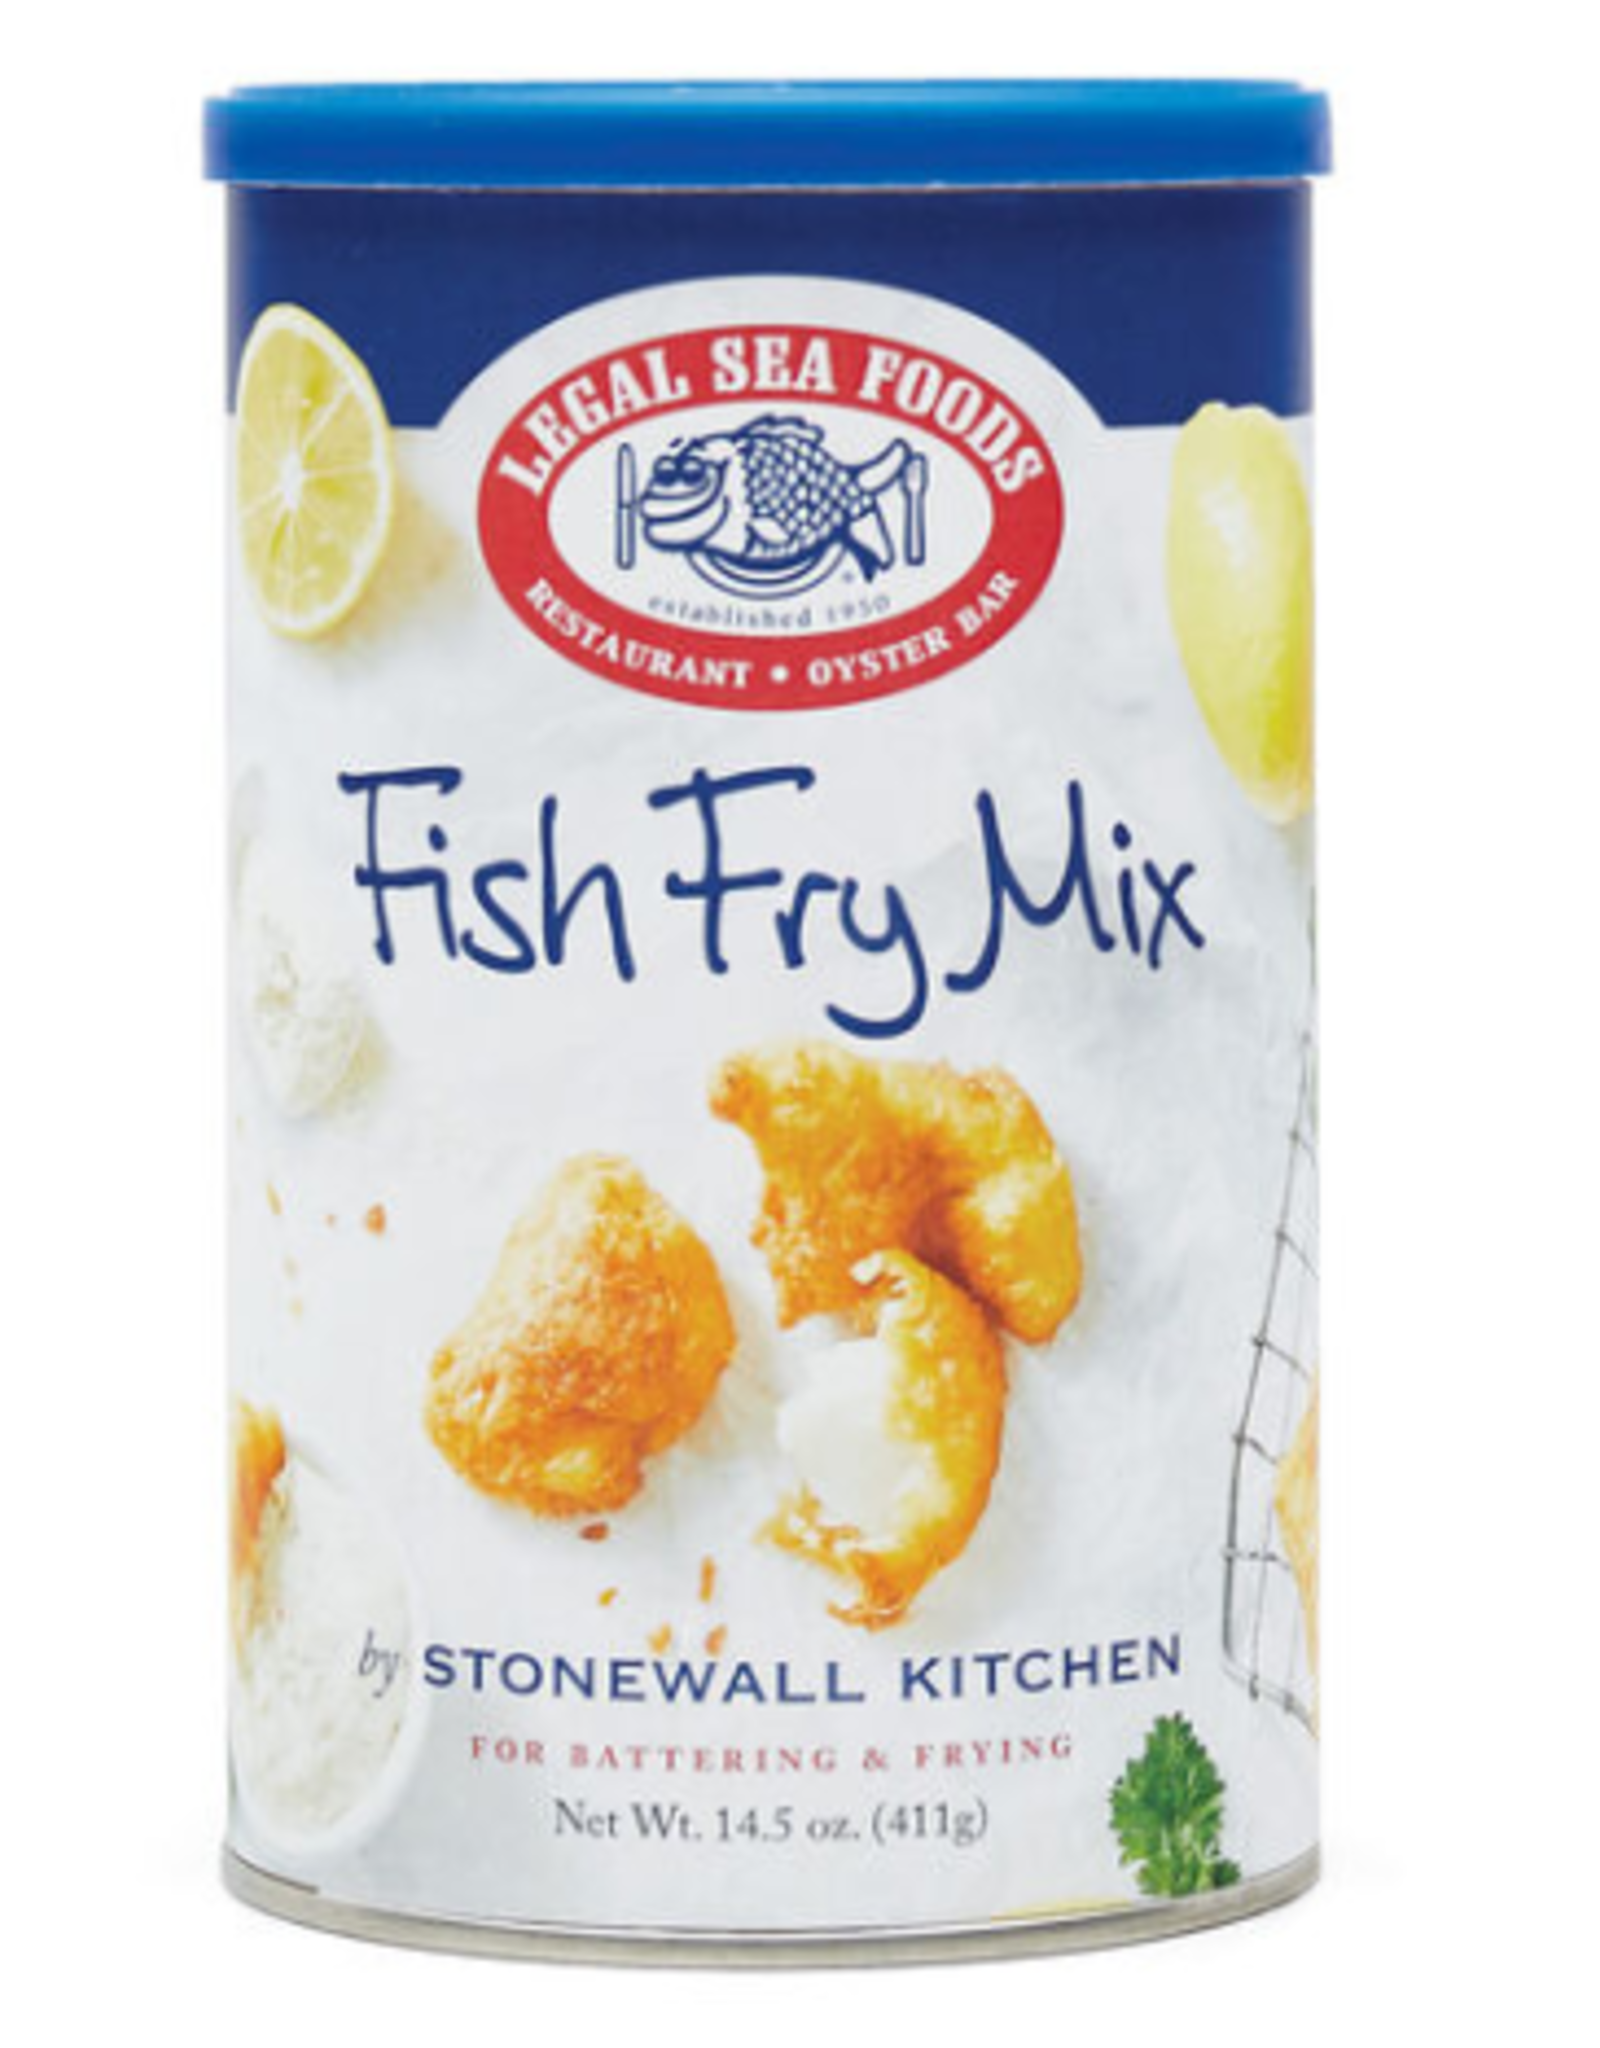 Stonewall Kitchen Fish Fry Mix